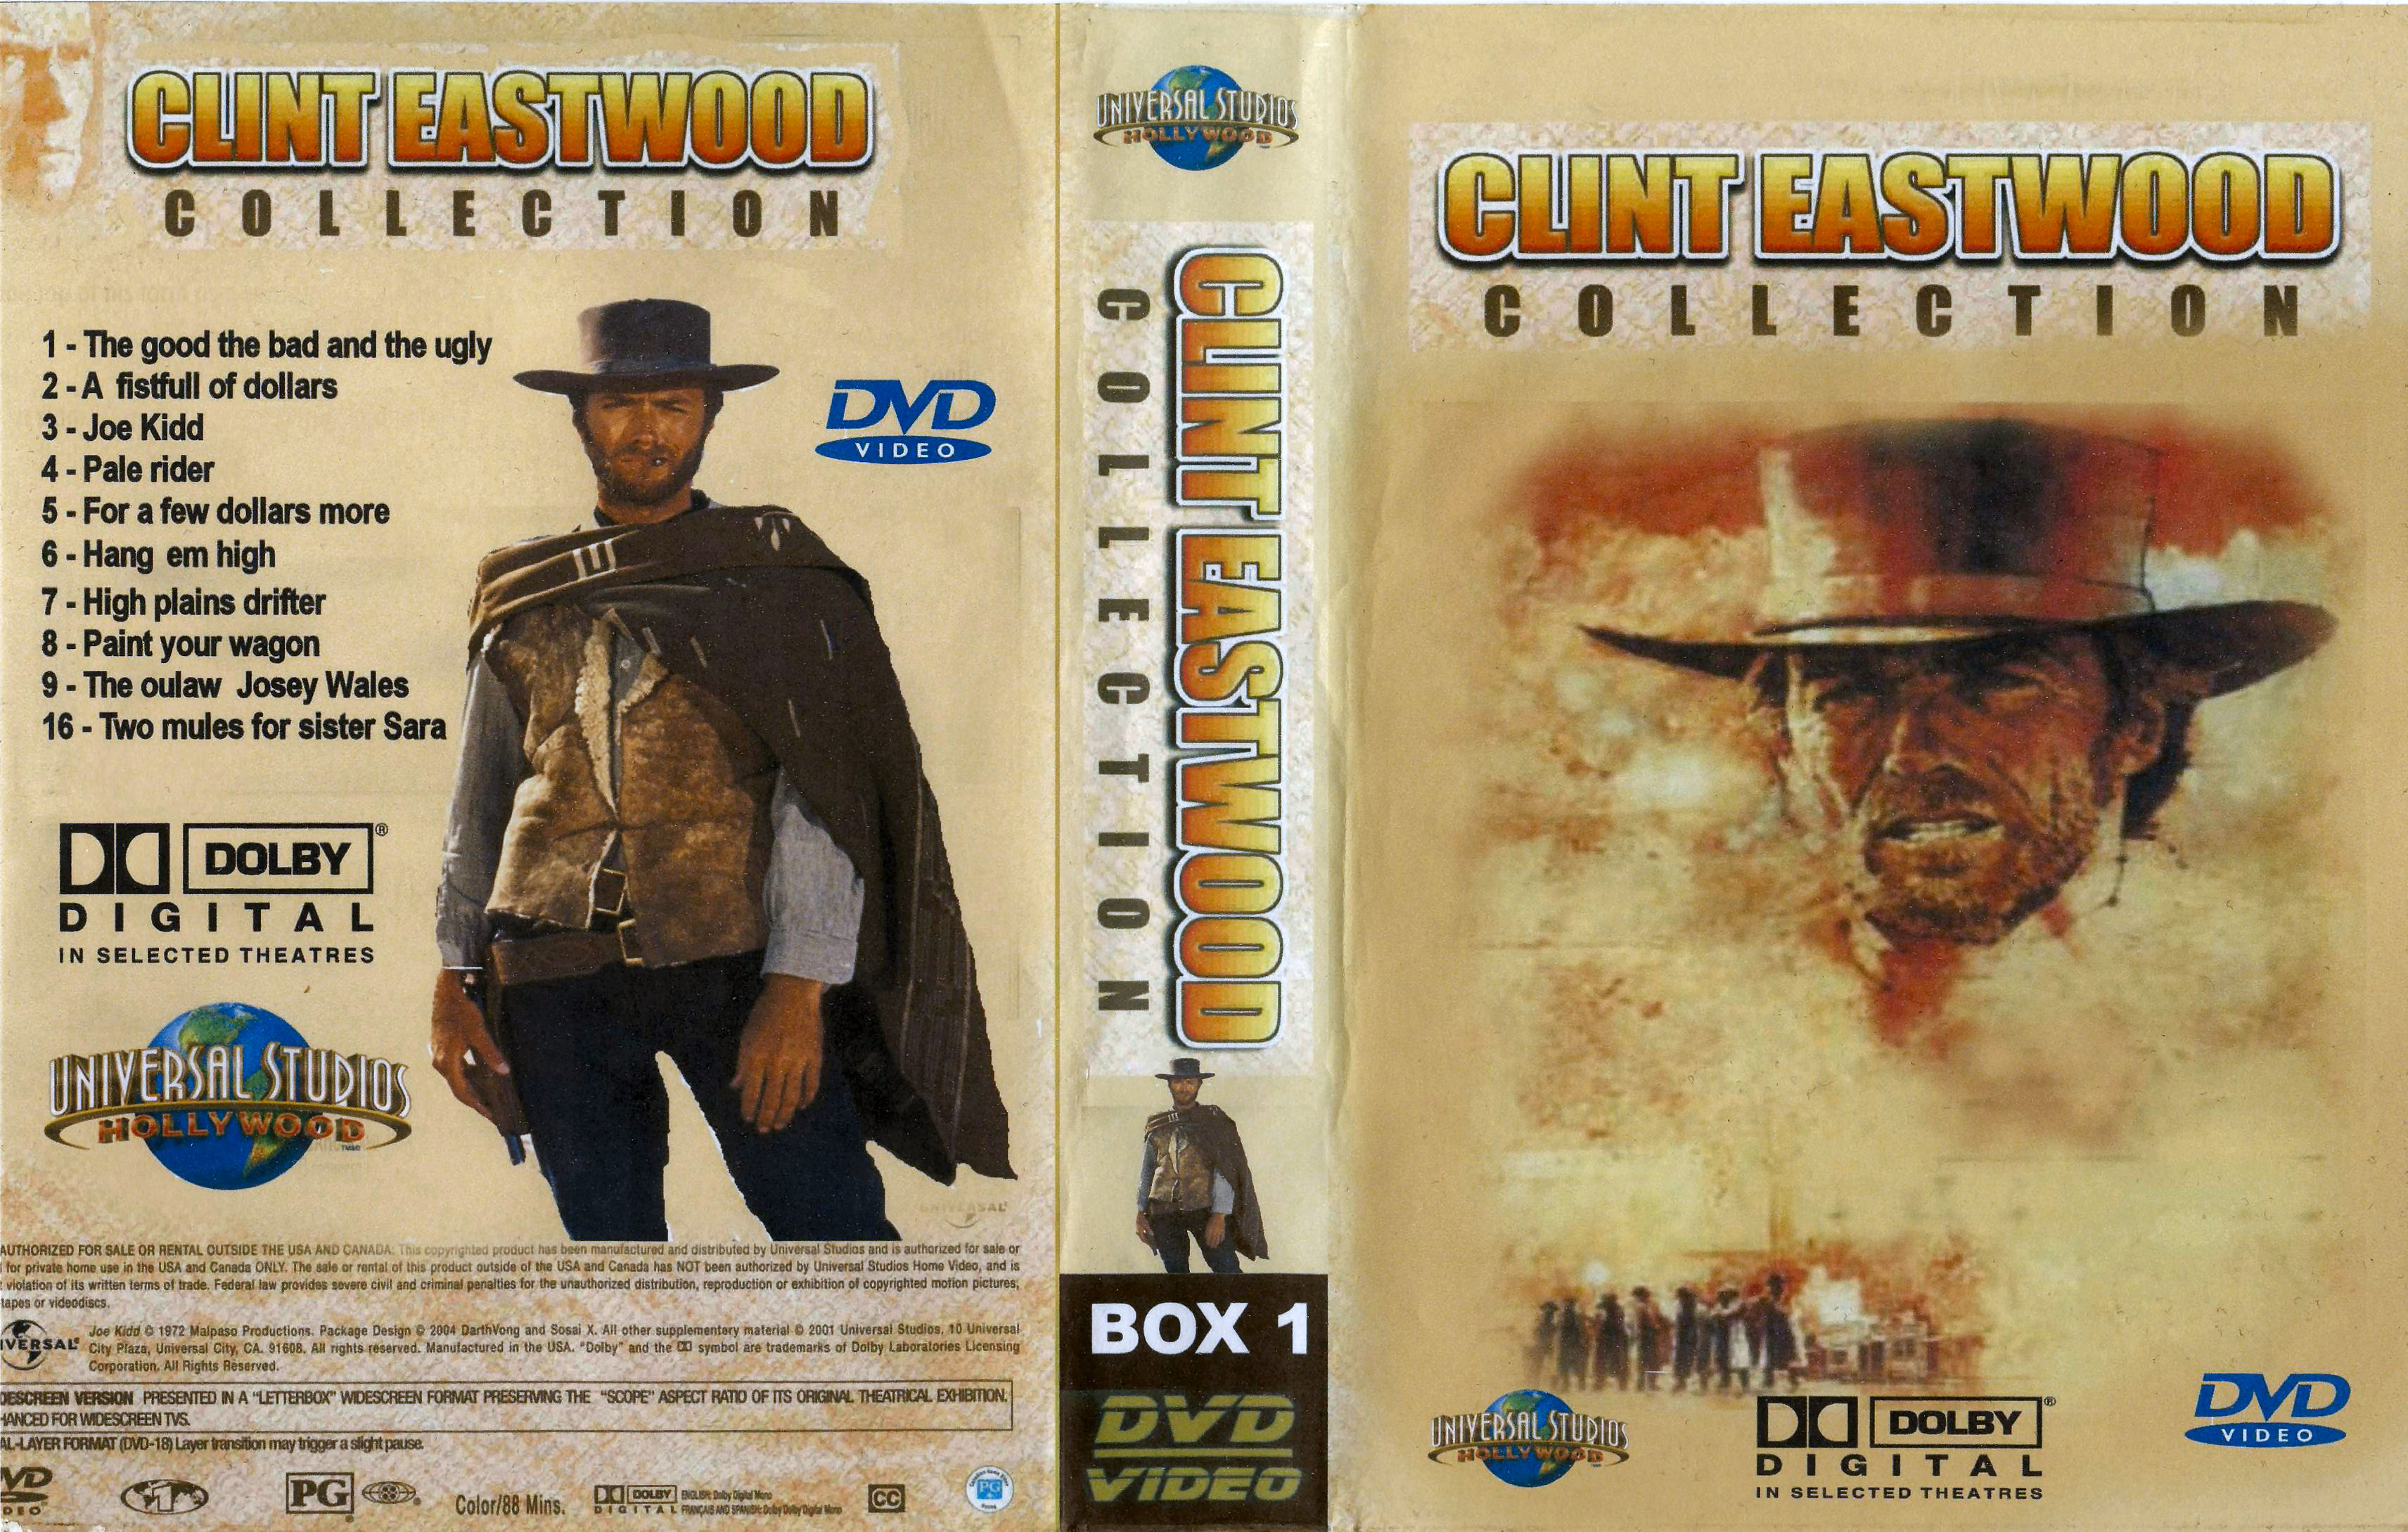 Clint Eastwood Collectie Box 1 DvD 6 van 10